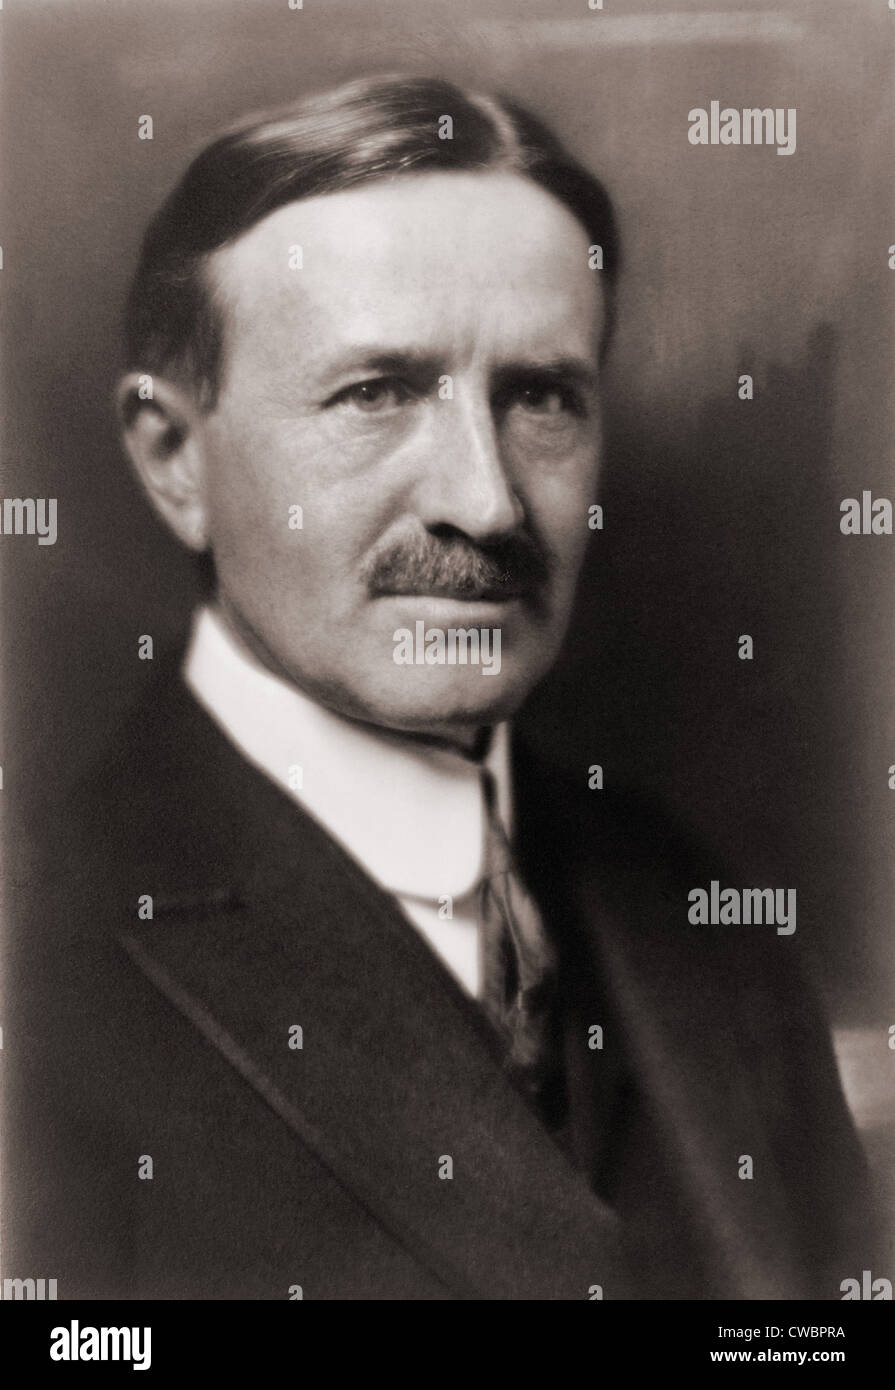 Harvey Firestone (1868-1938), fondata la Firestone pneumatico e azienda di gomma. 1915 ritratto da Pirie MacDonald. Foto Stock